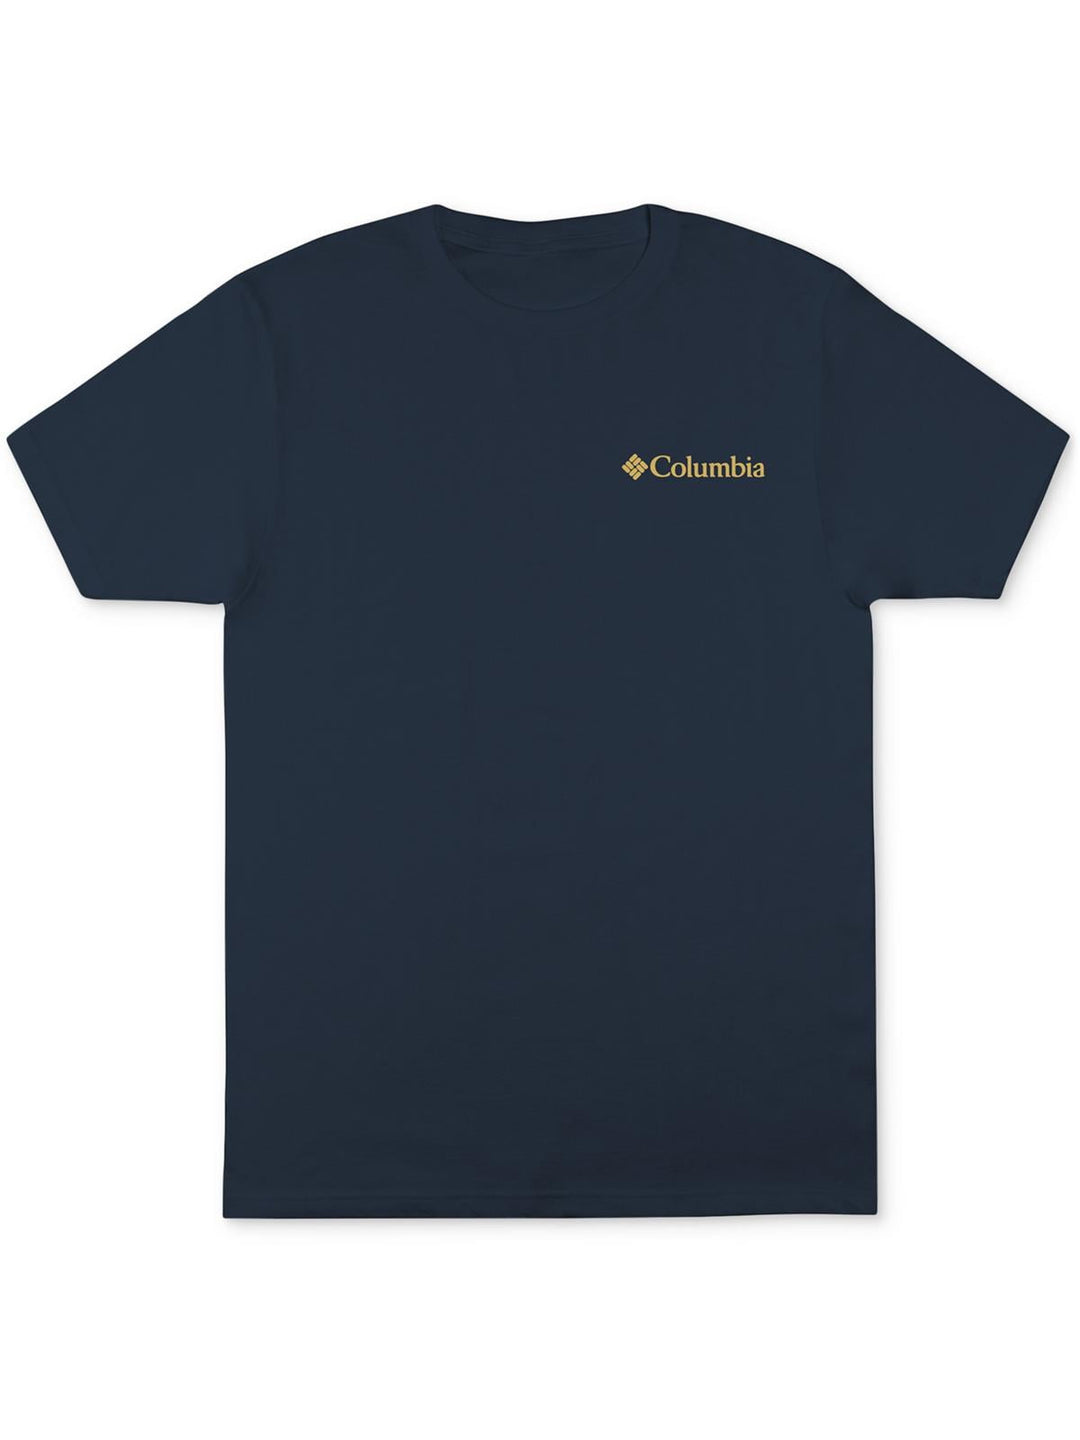 Columbia Men's Cotton Crewneck Graphic T-Shirt Blue Size Large